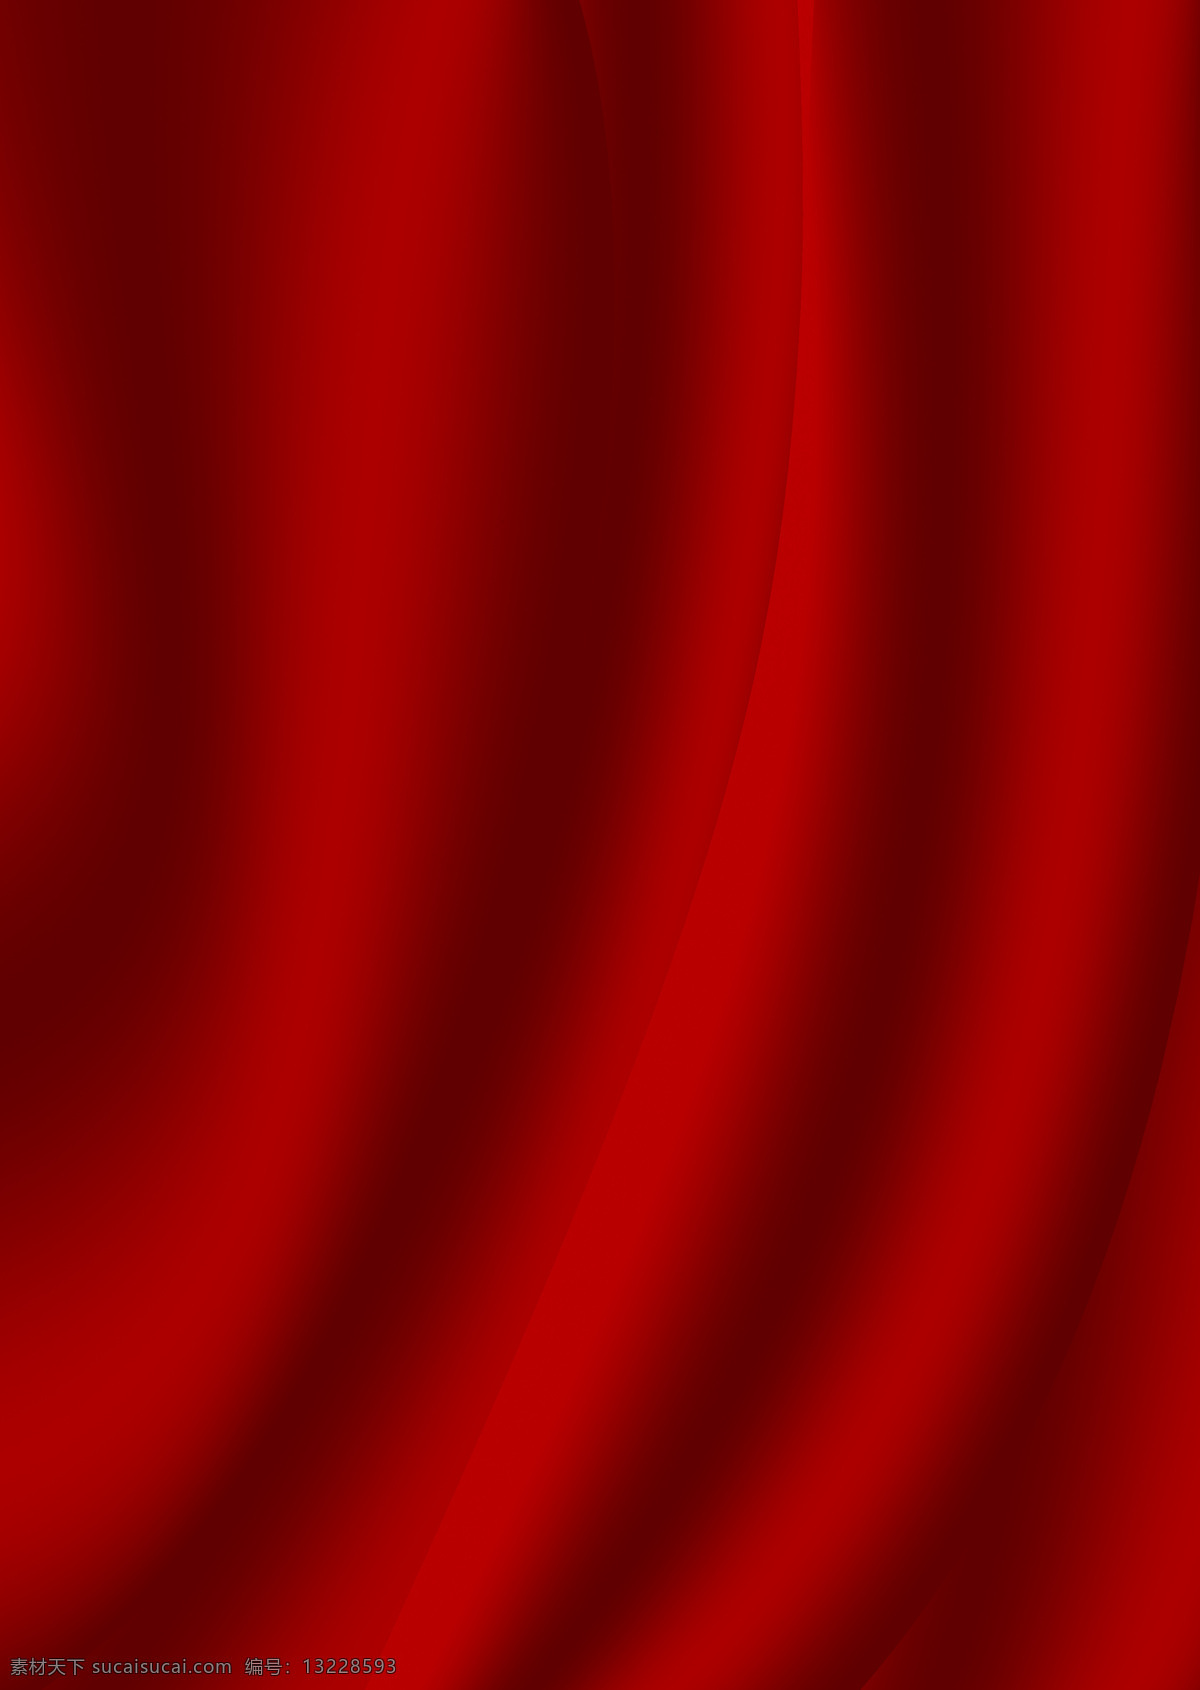 丝绸背景图片 丝绸 红色 绸缎 背景 背景素材 底纹边框 背景底纹